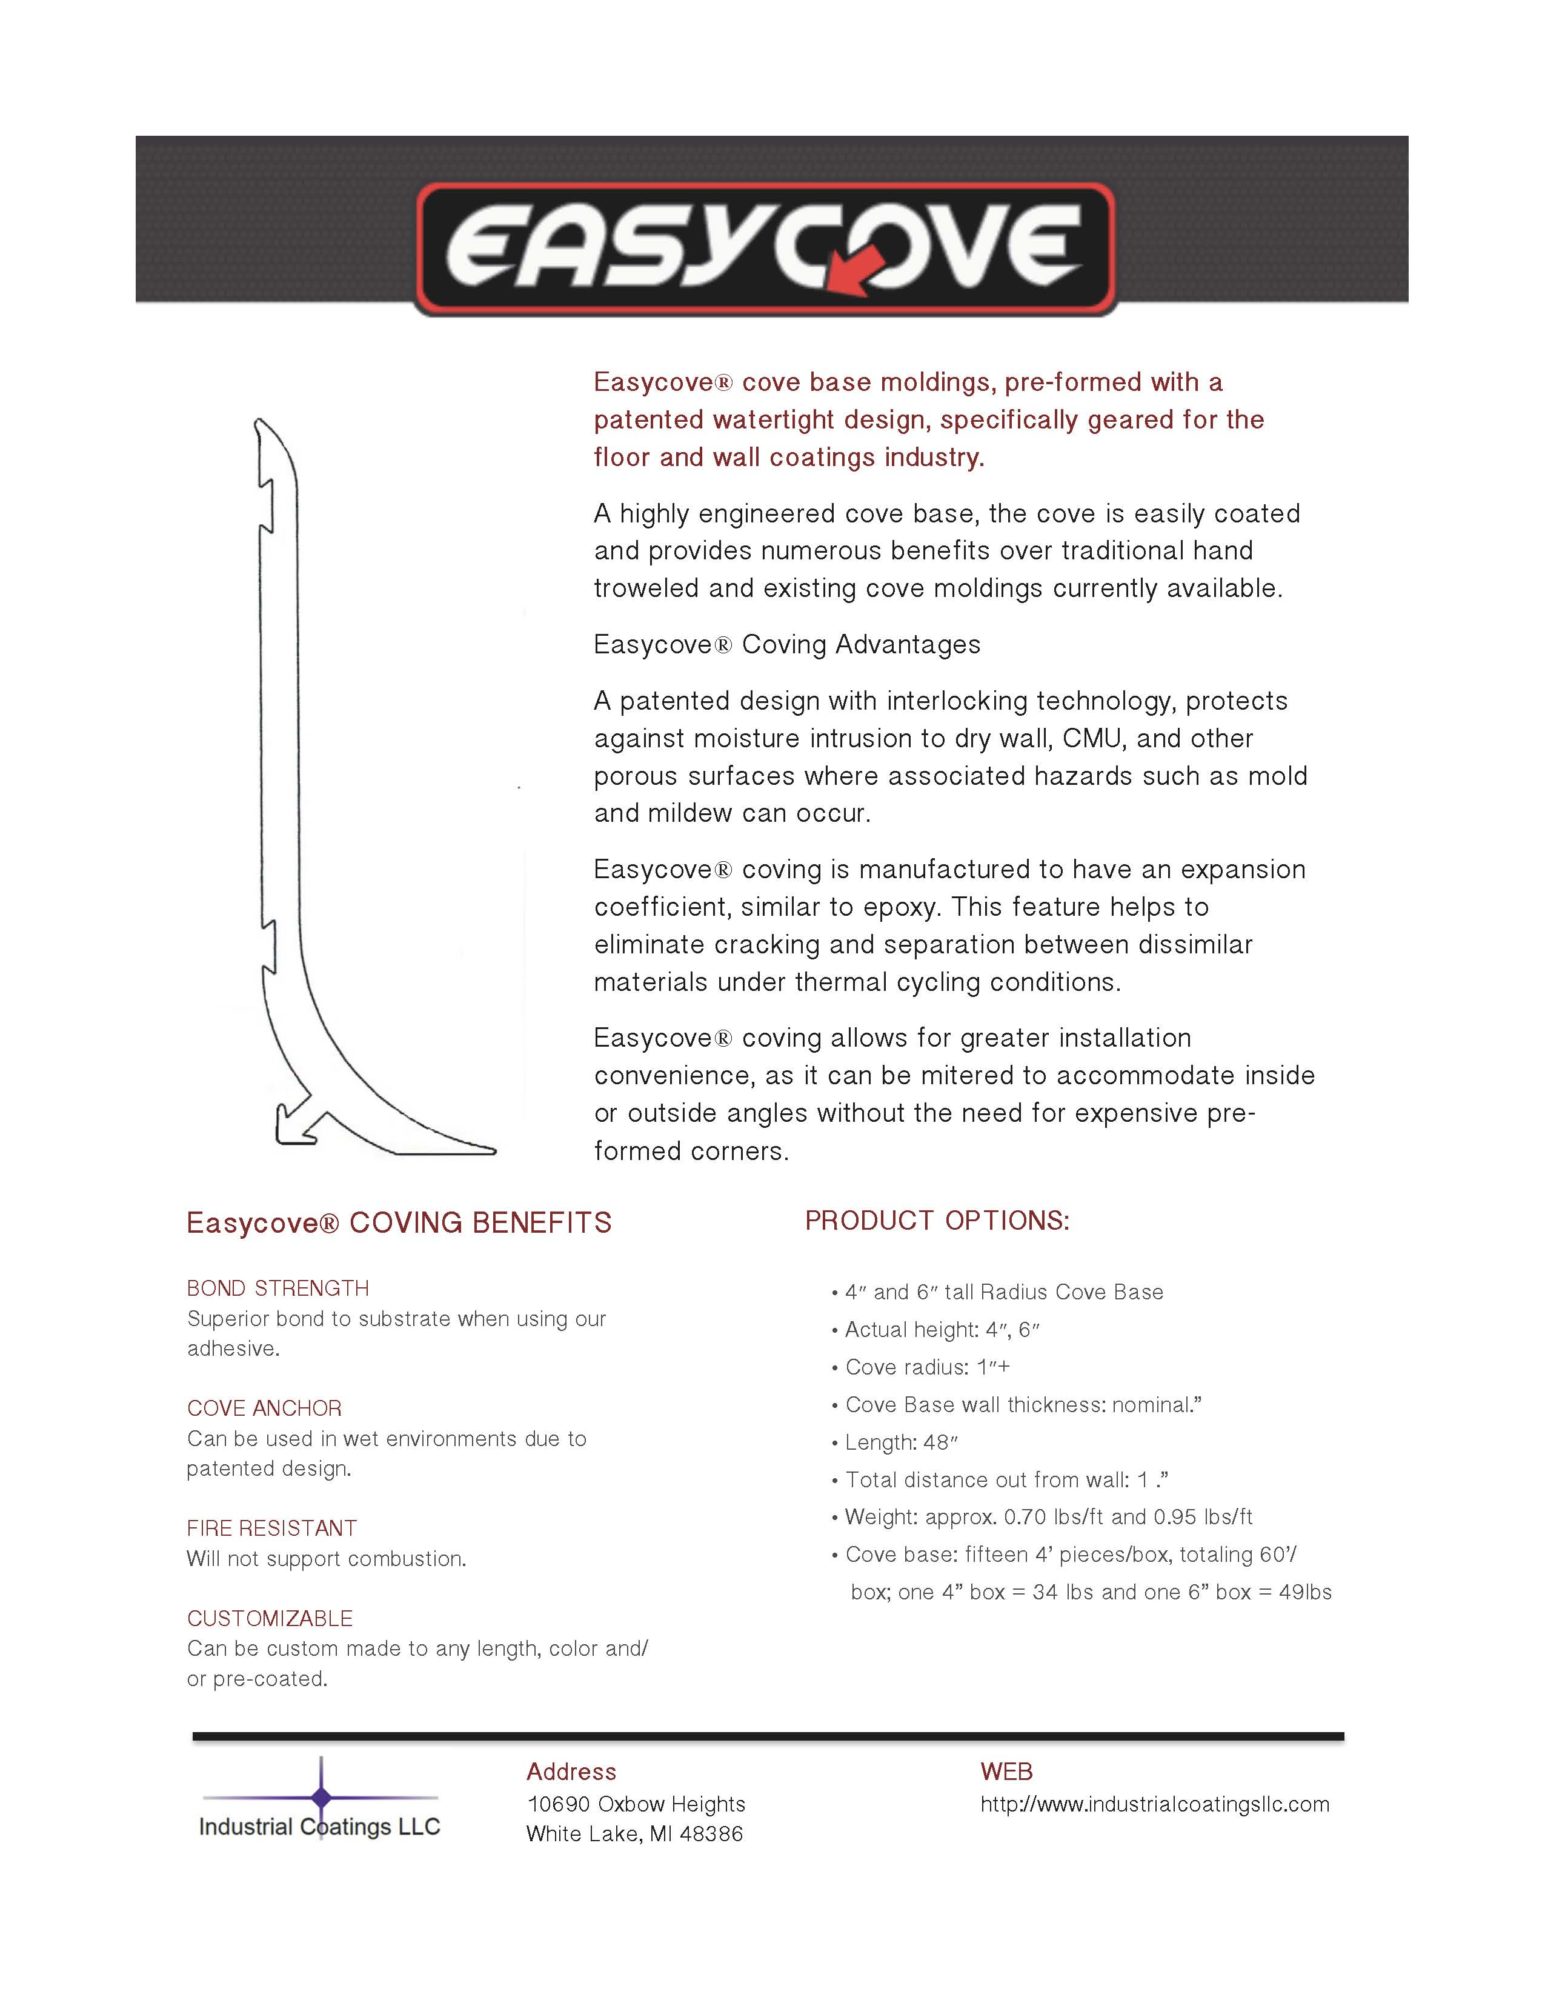 Easycove Sales Sheet Industrial Coatings, LLC